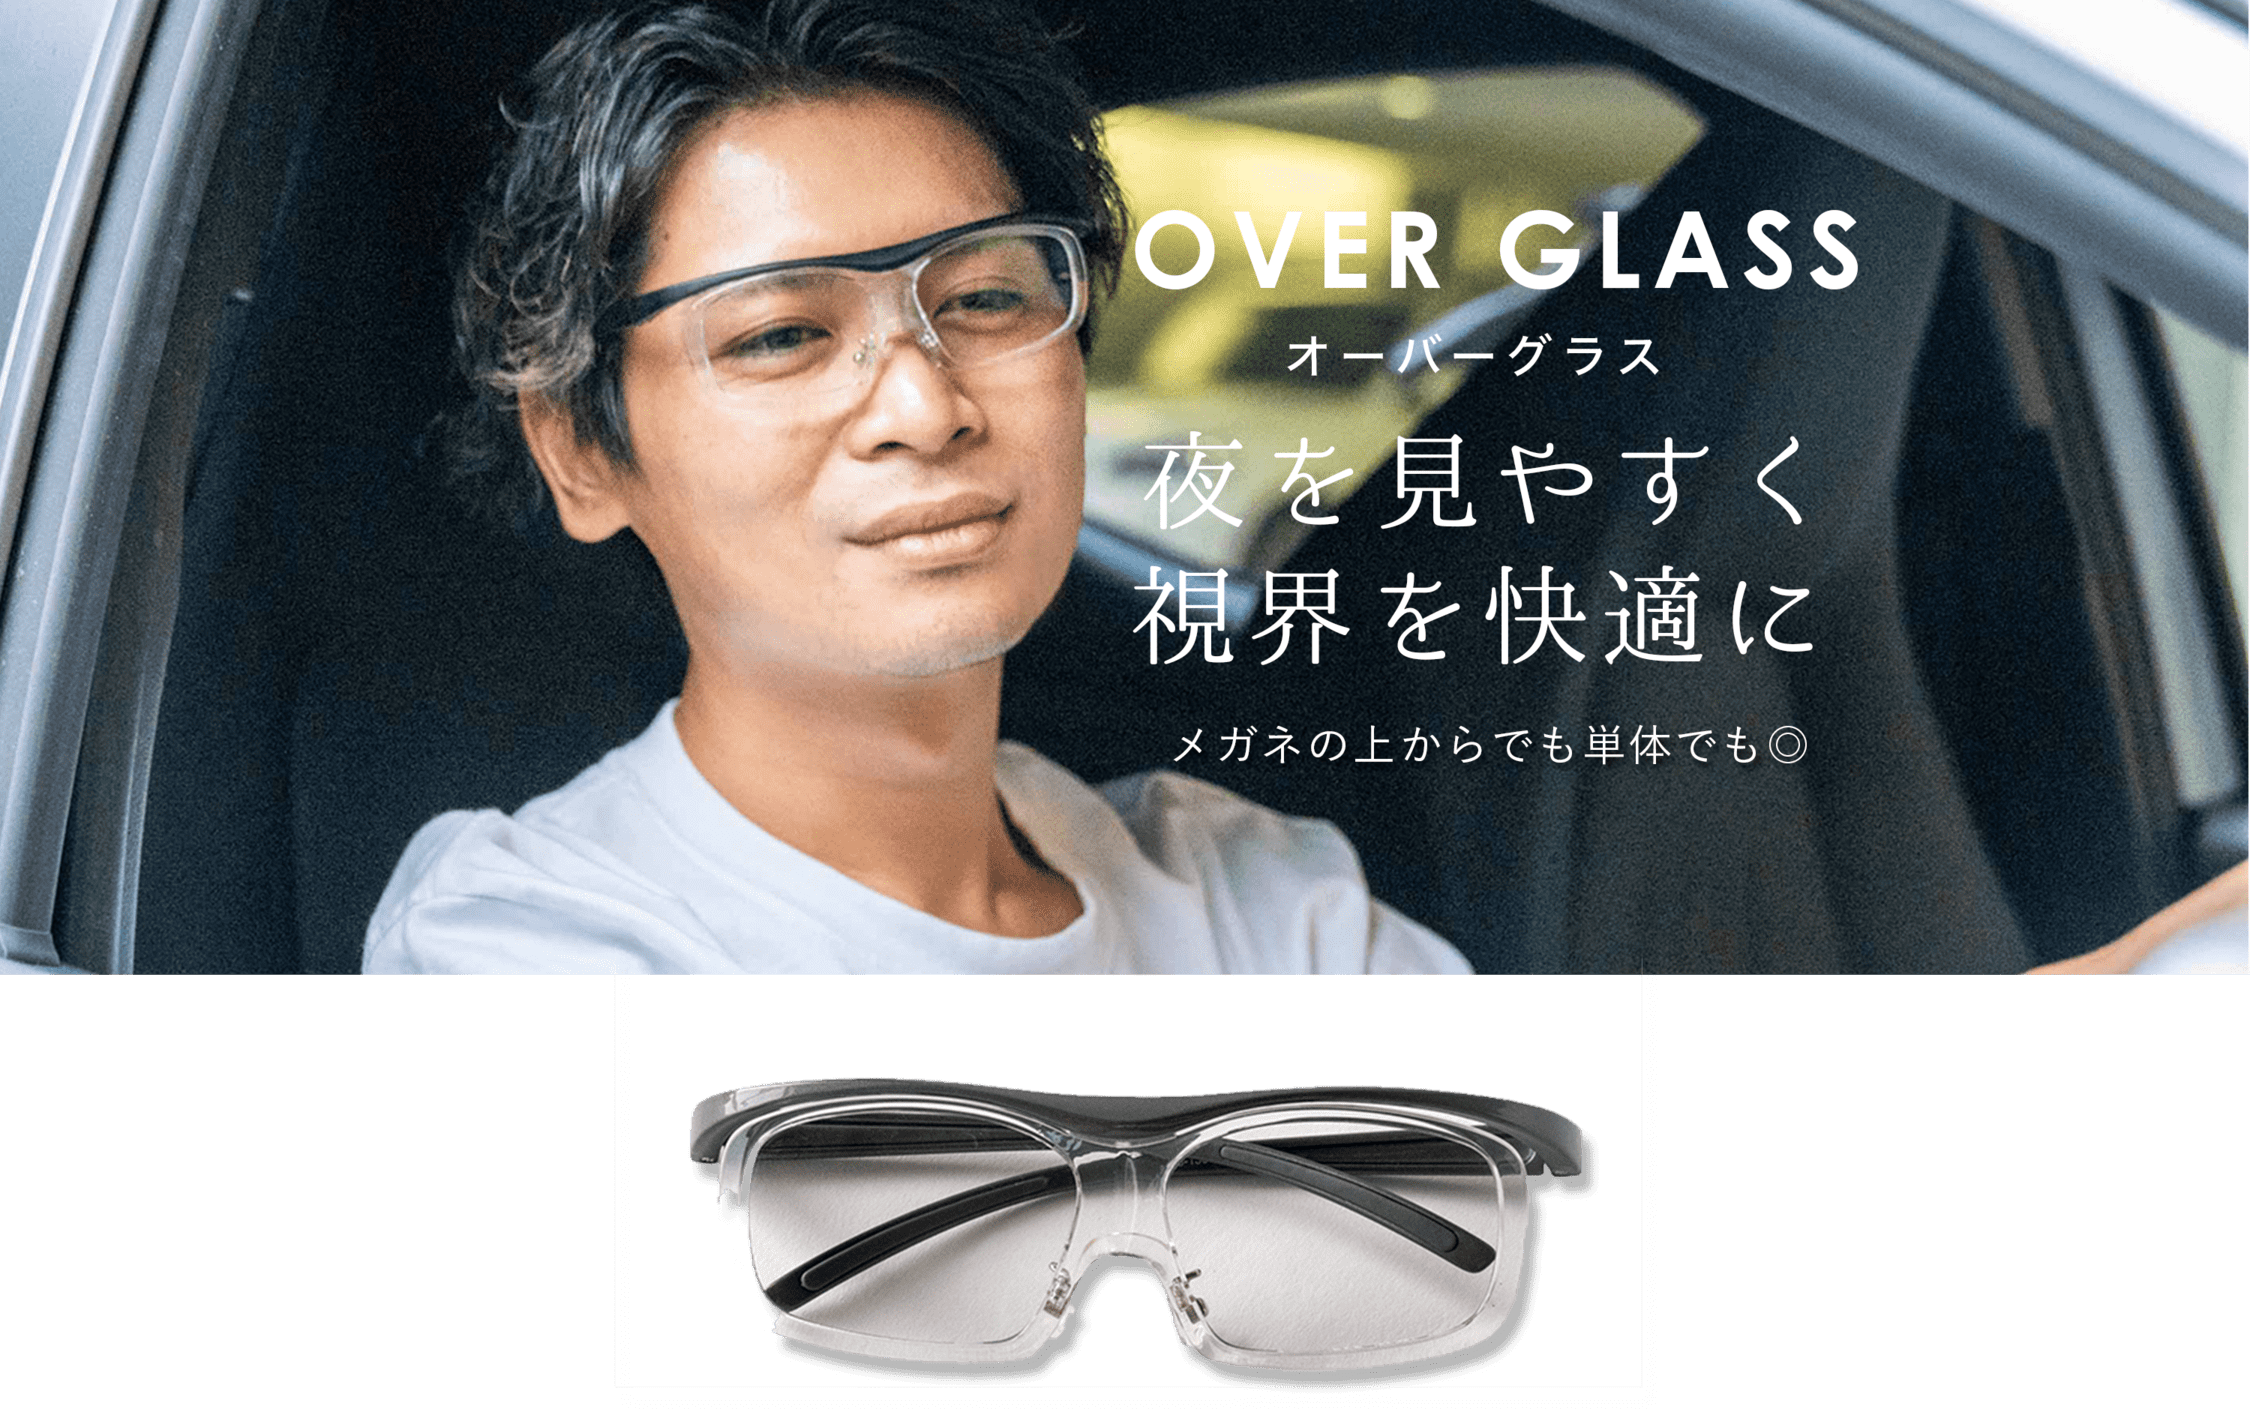 OVER GLASS オーバーグラス 夜を見やすく視界を快適に メガネの上からでも単体でも◎